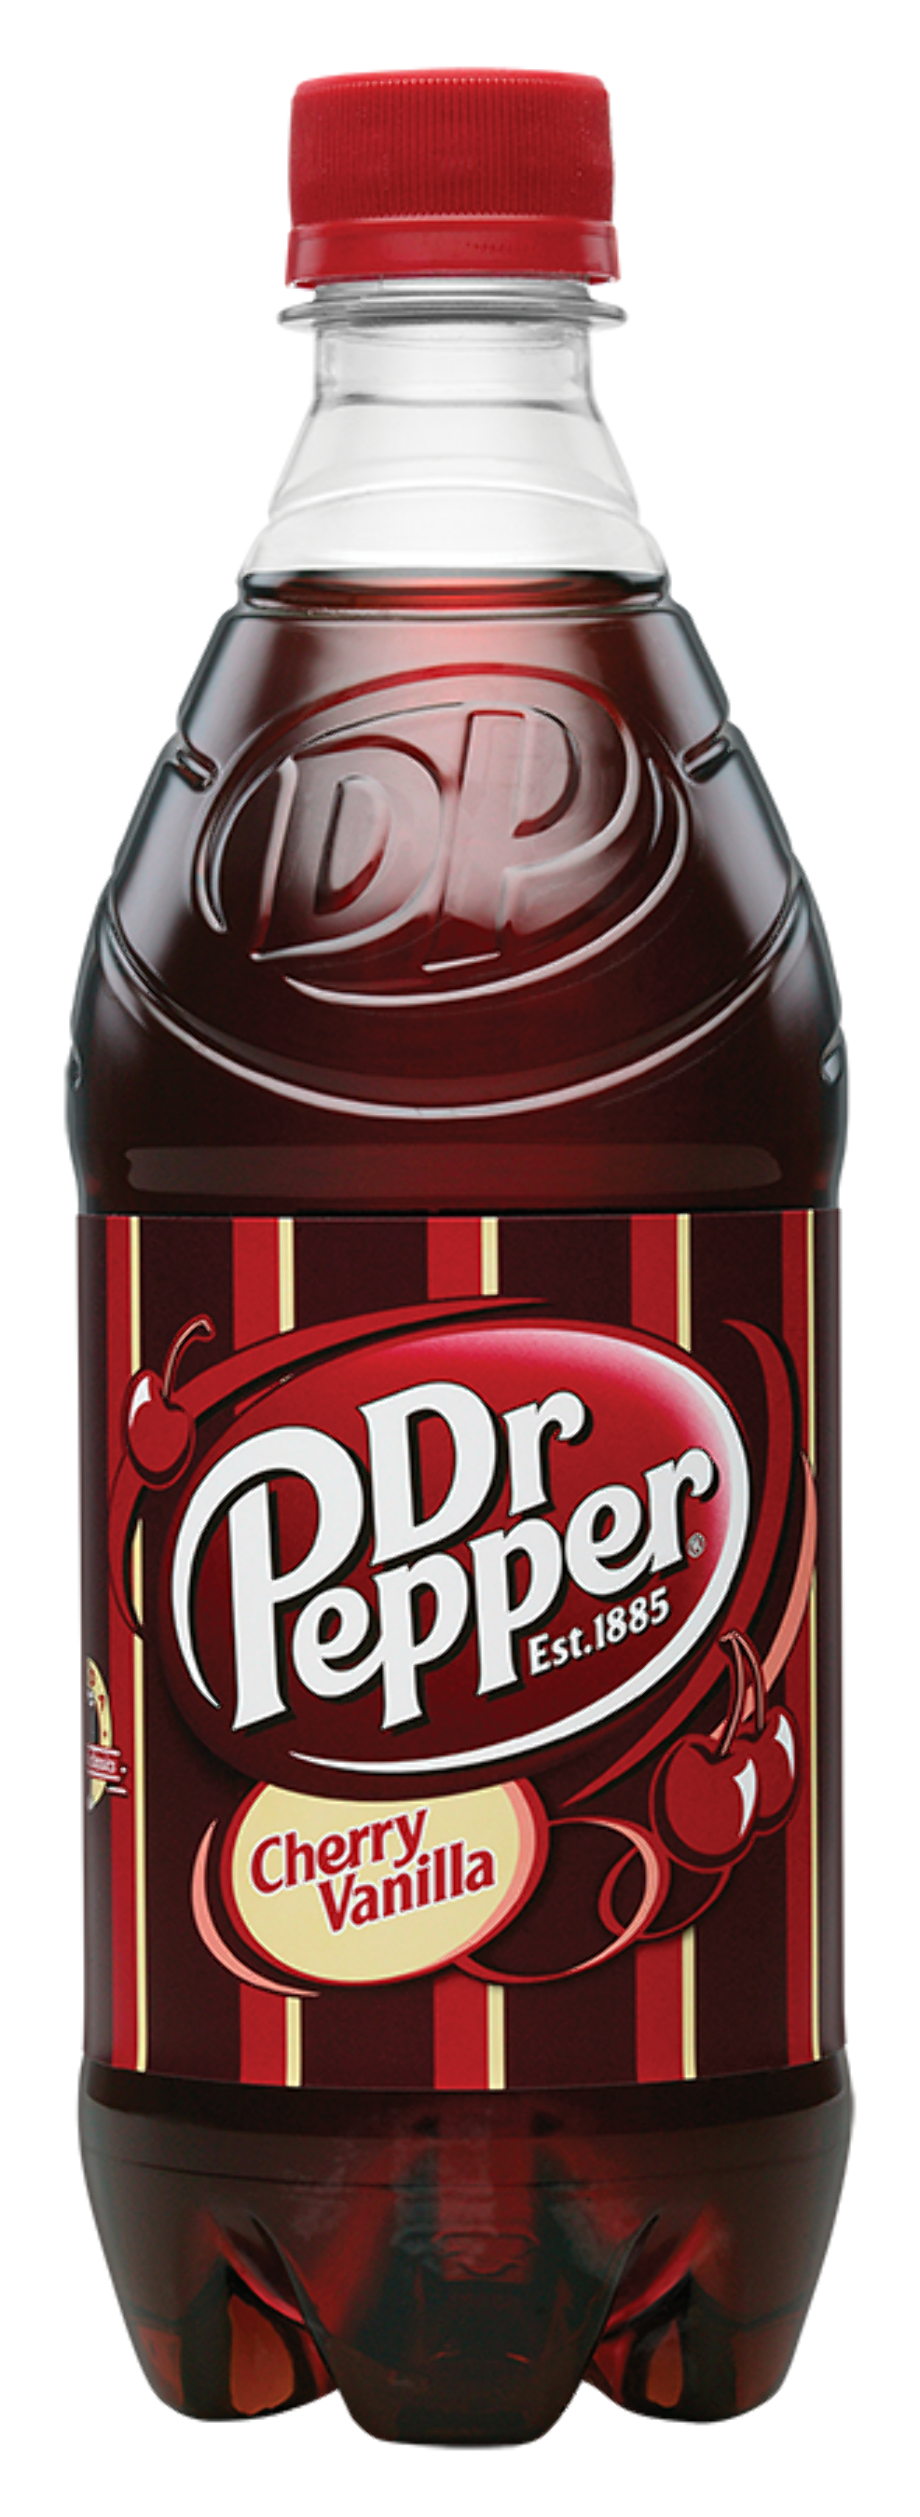 Vanilla pepper. Доктор Пеппер. Доктор Пеппер Cherry. Доктор Пеппер напиток вишня. Лимонад доктор Пеппер.